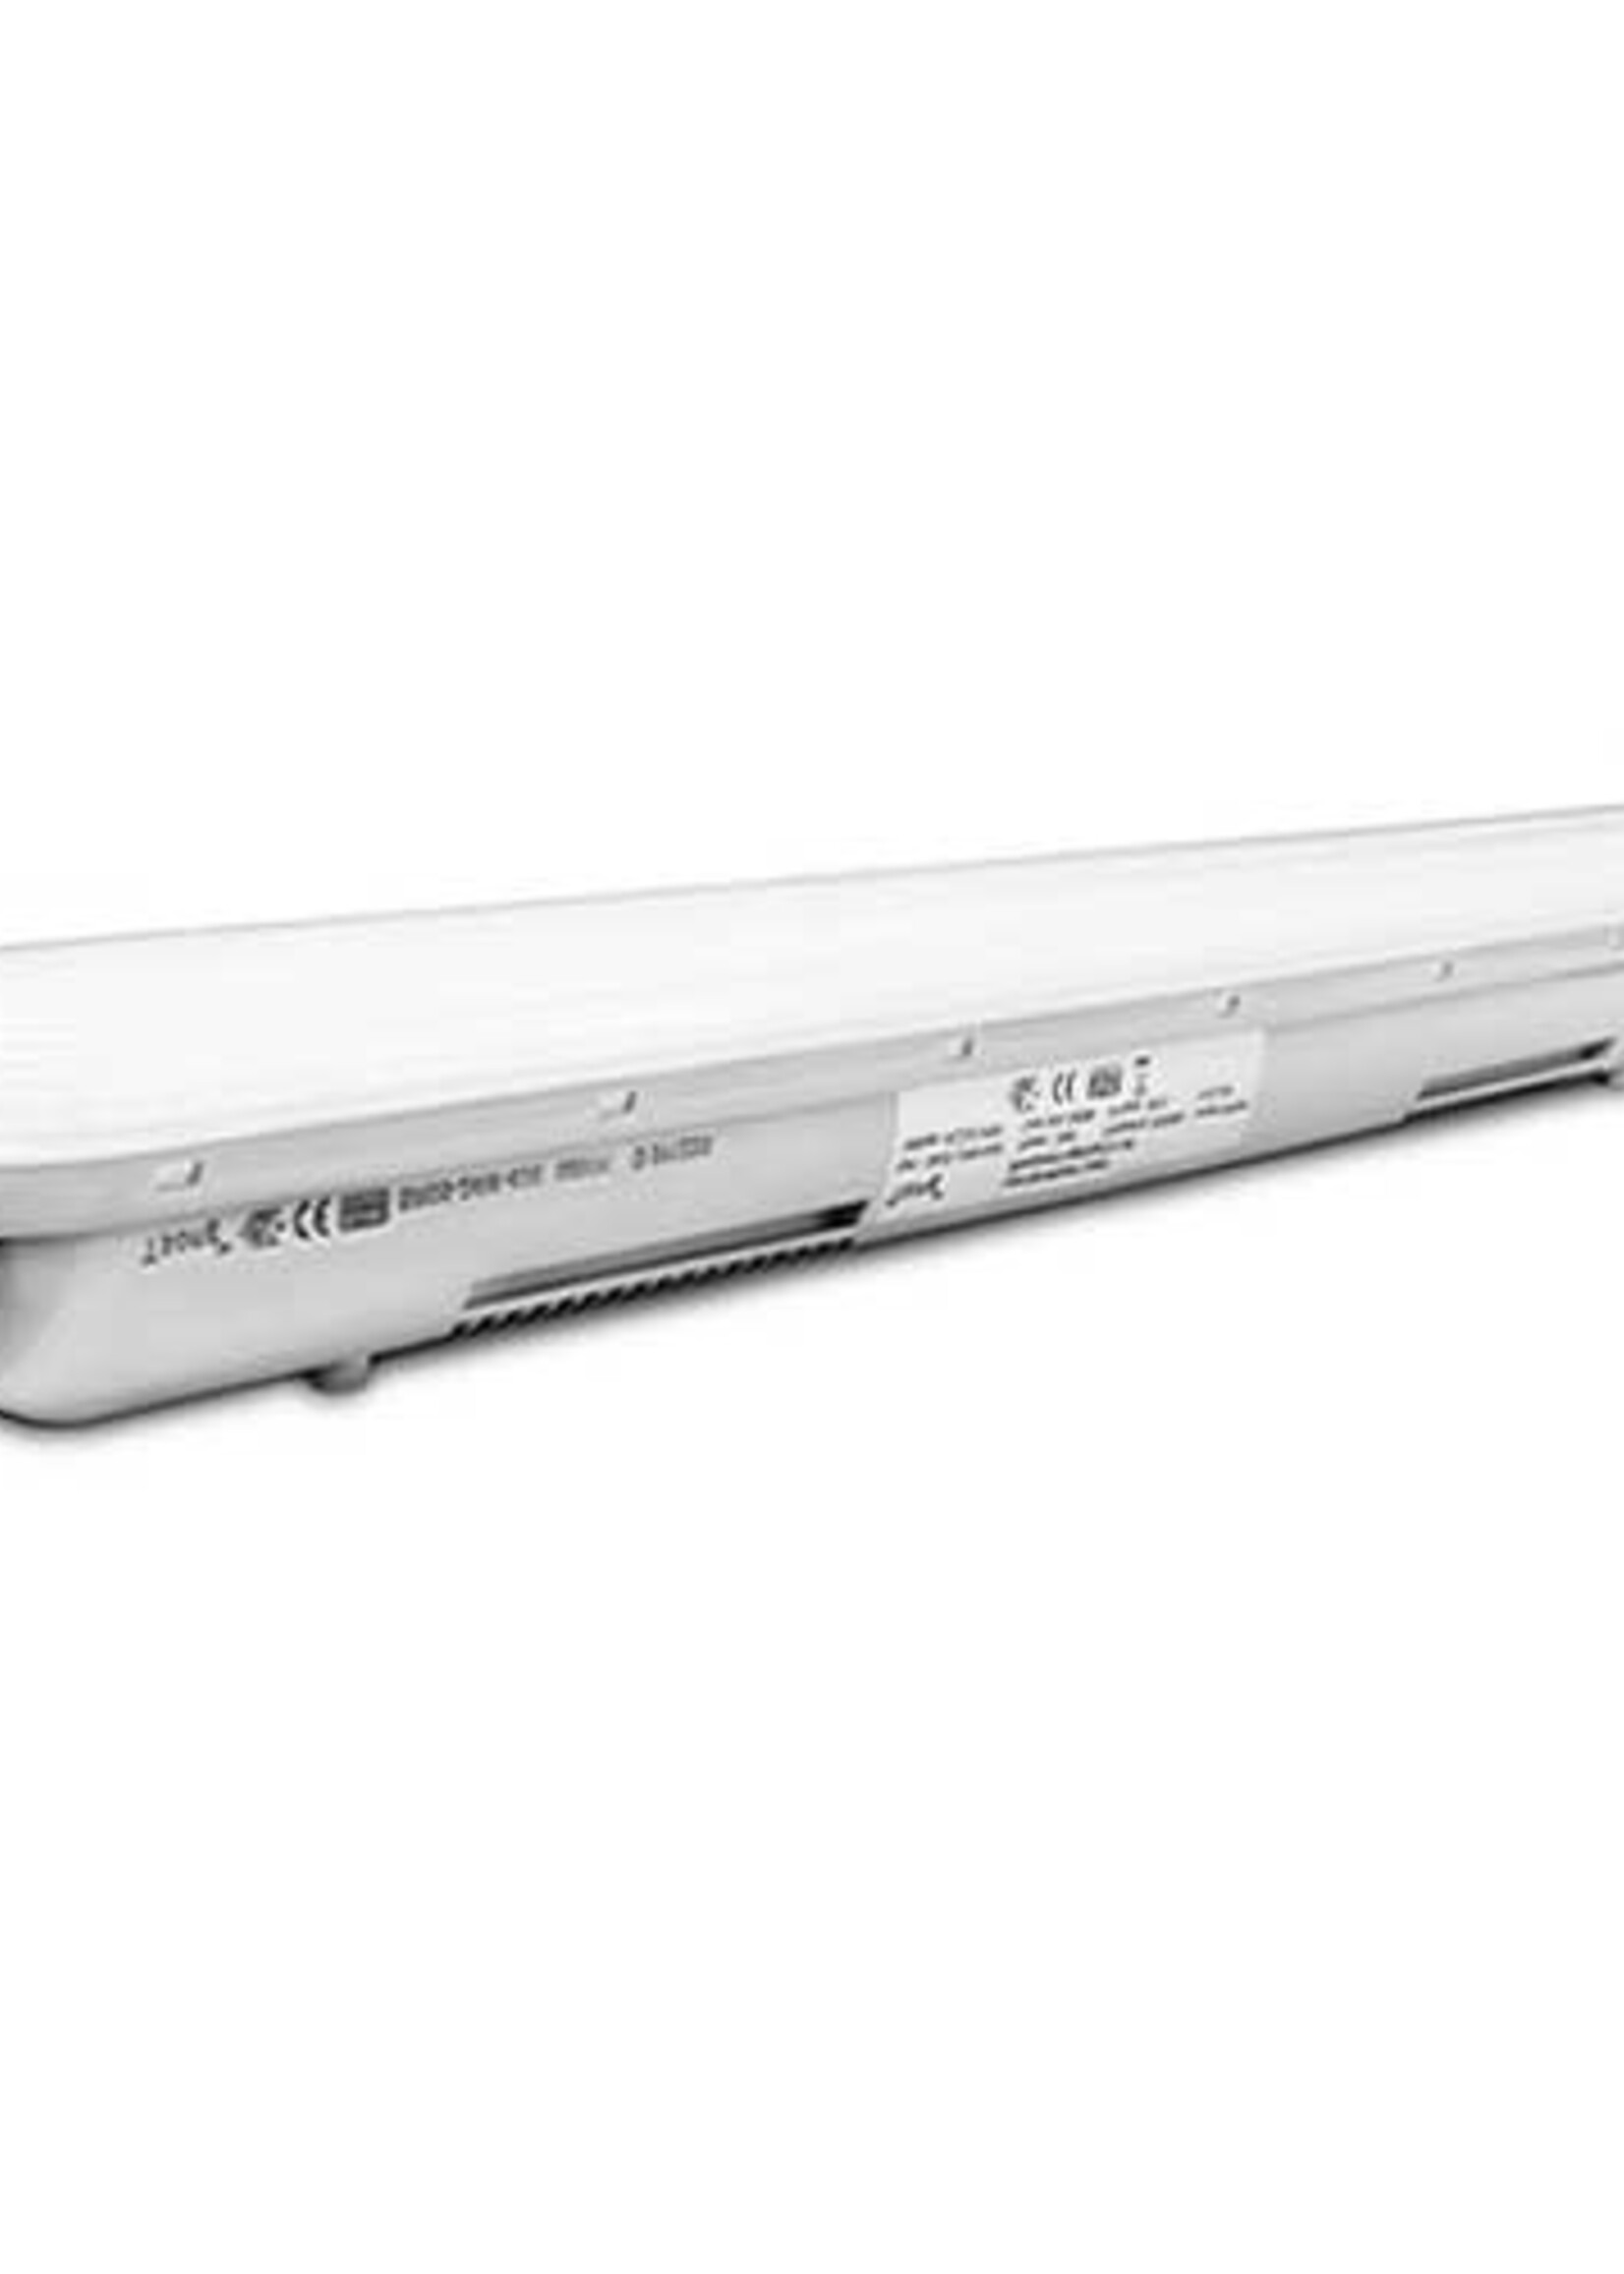 LEDWINKEL-Online LED TL IP65 waterbestendig 60cm koppelbaar 24W